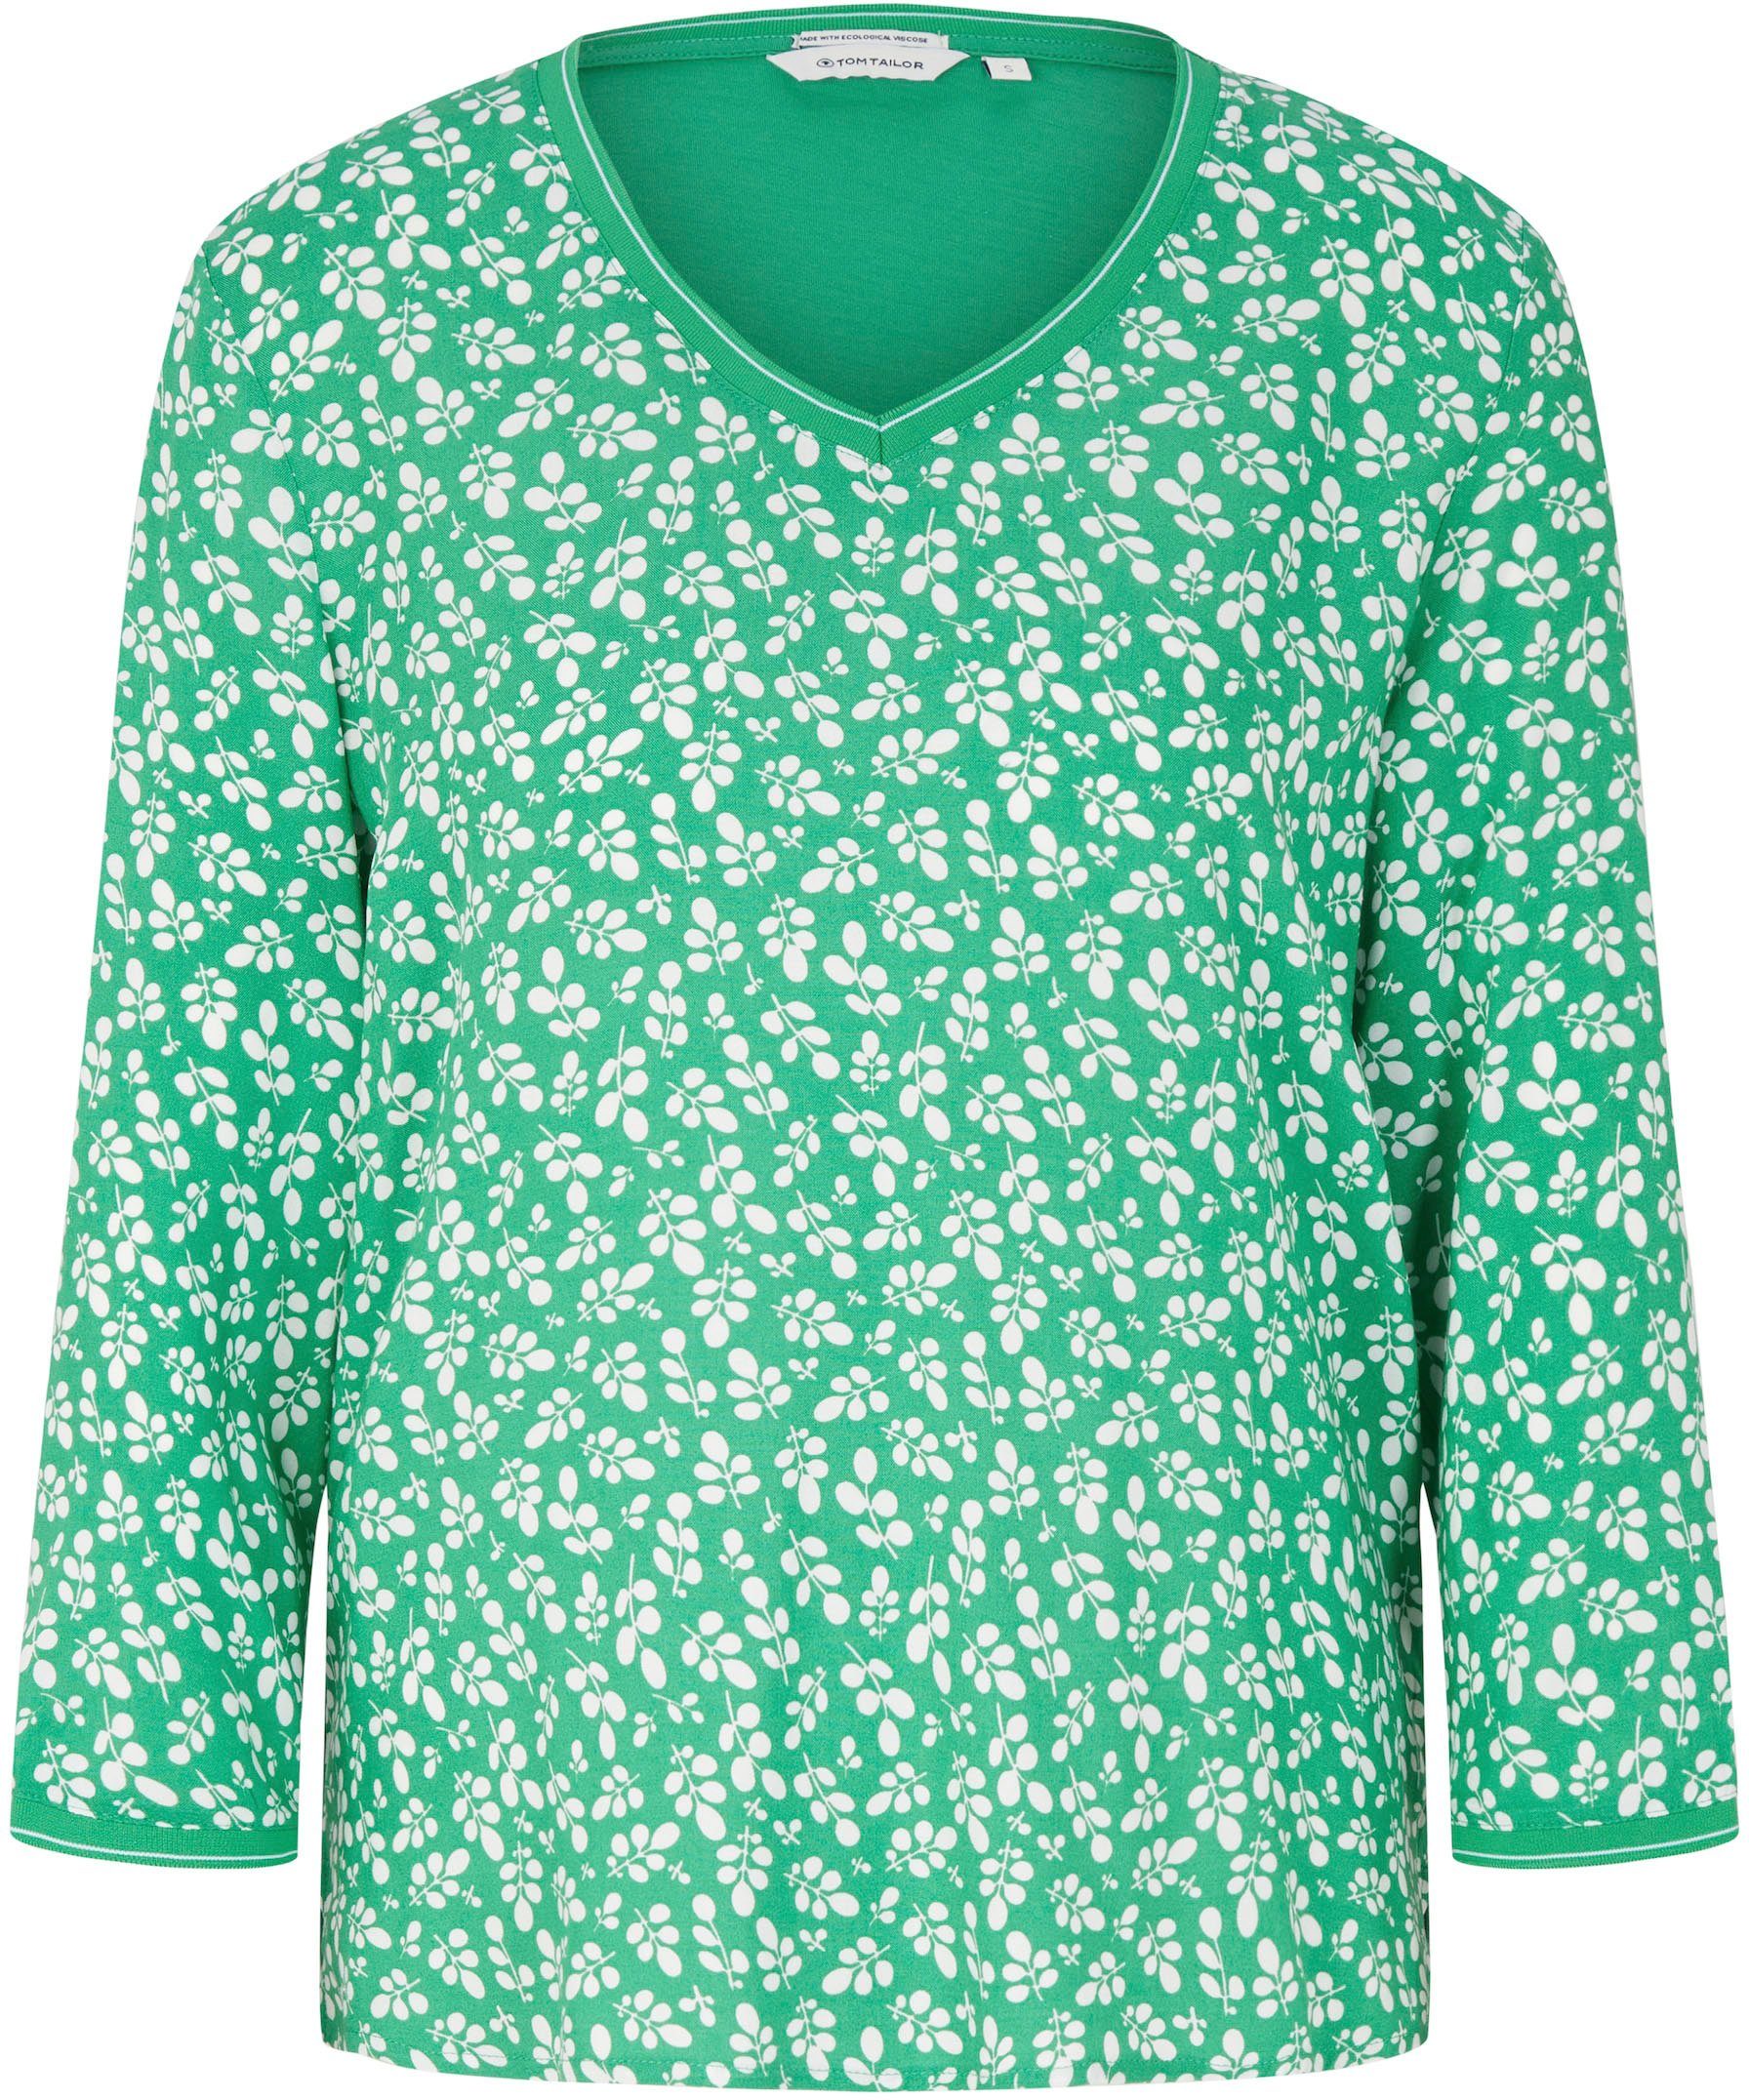 TAILOR TOM flor T-Shirt Bedruckung mit green